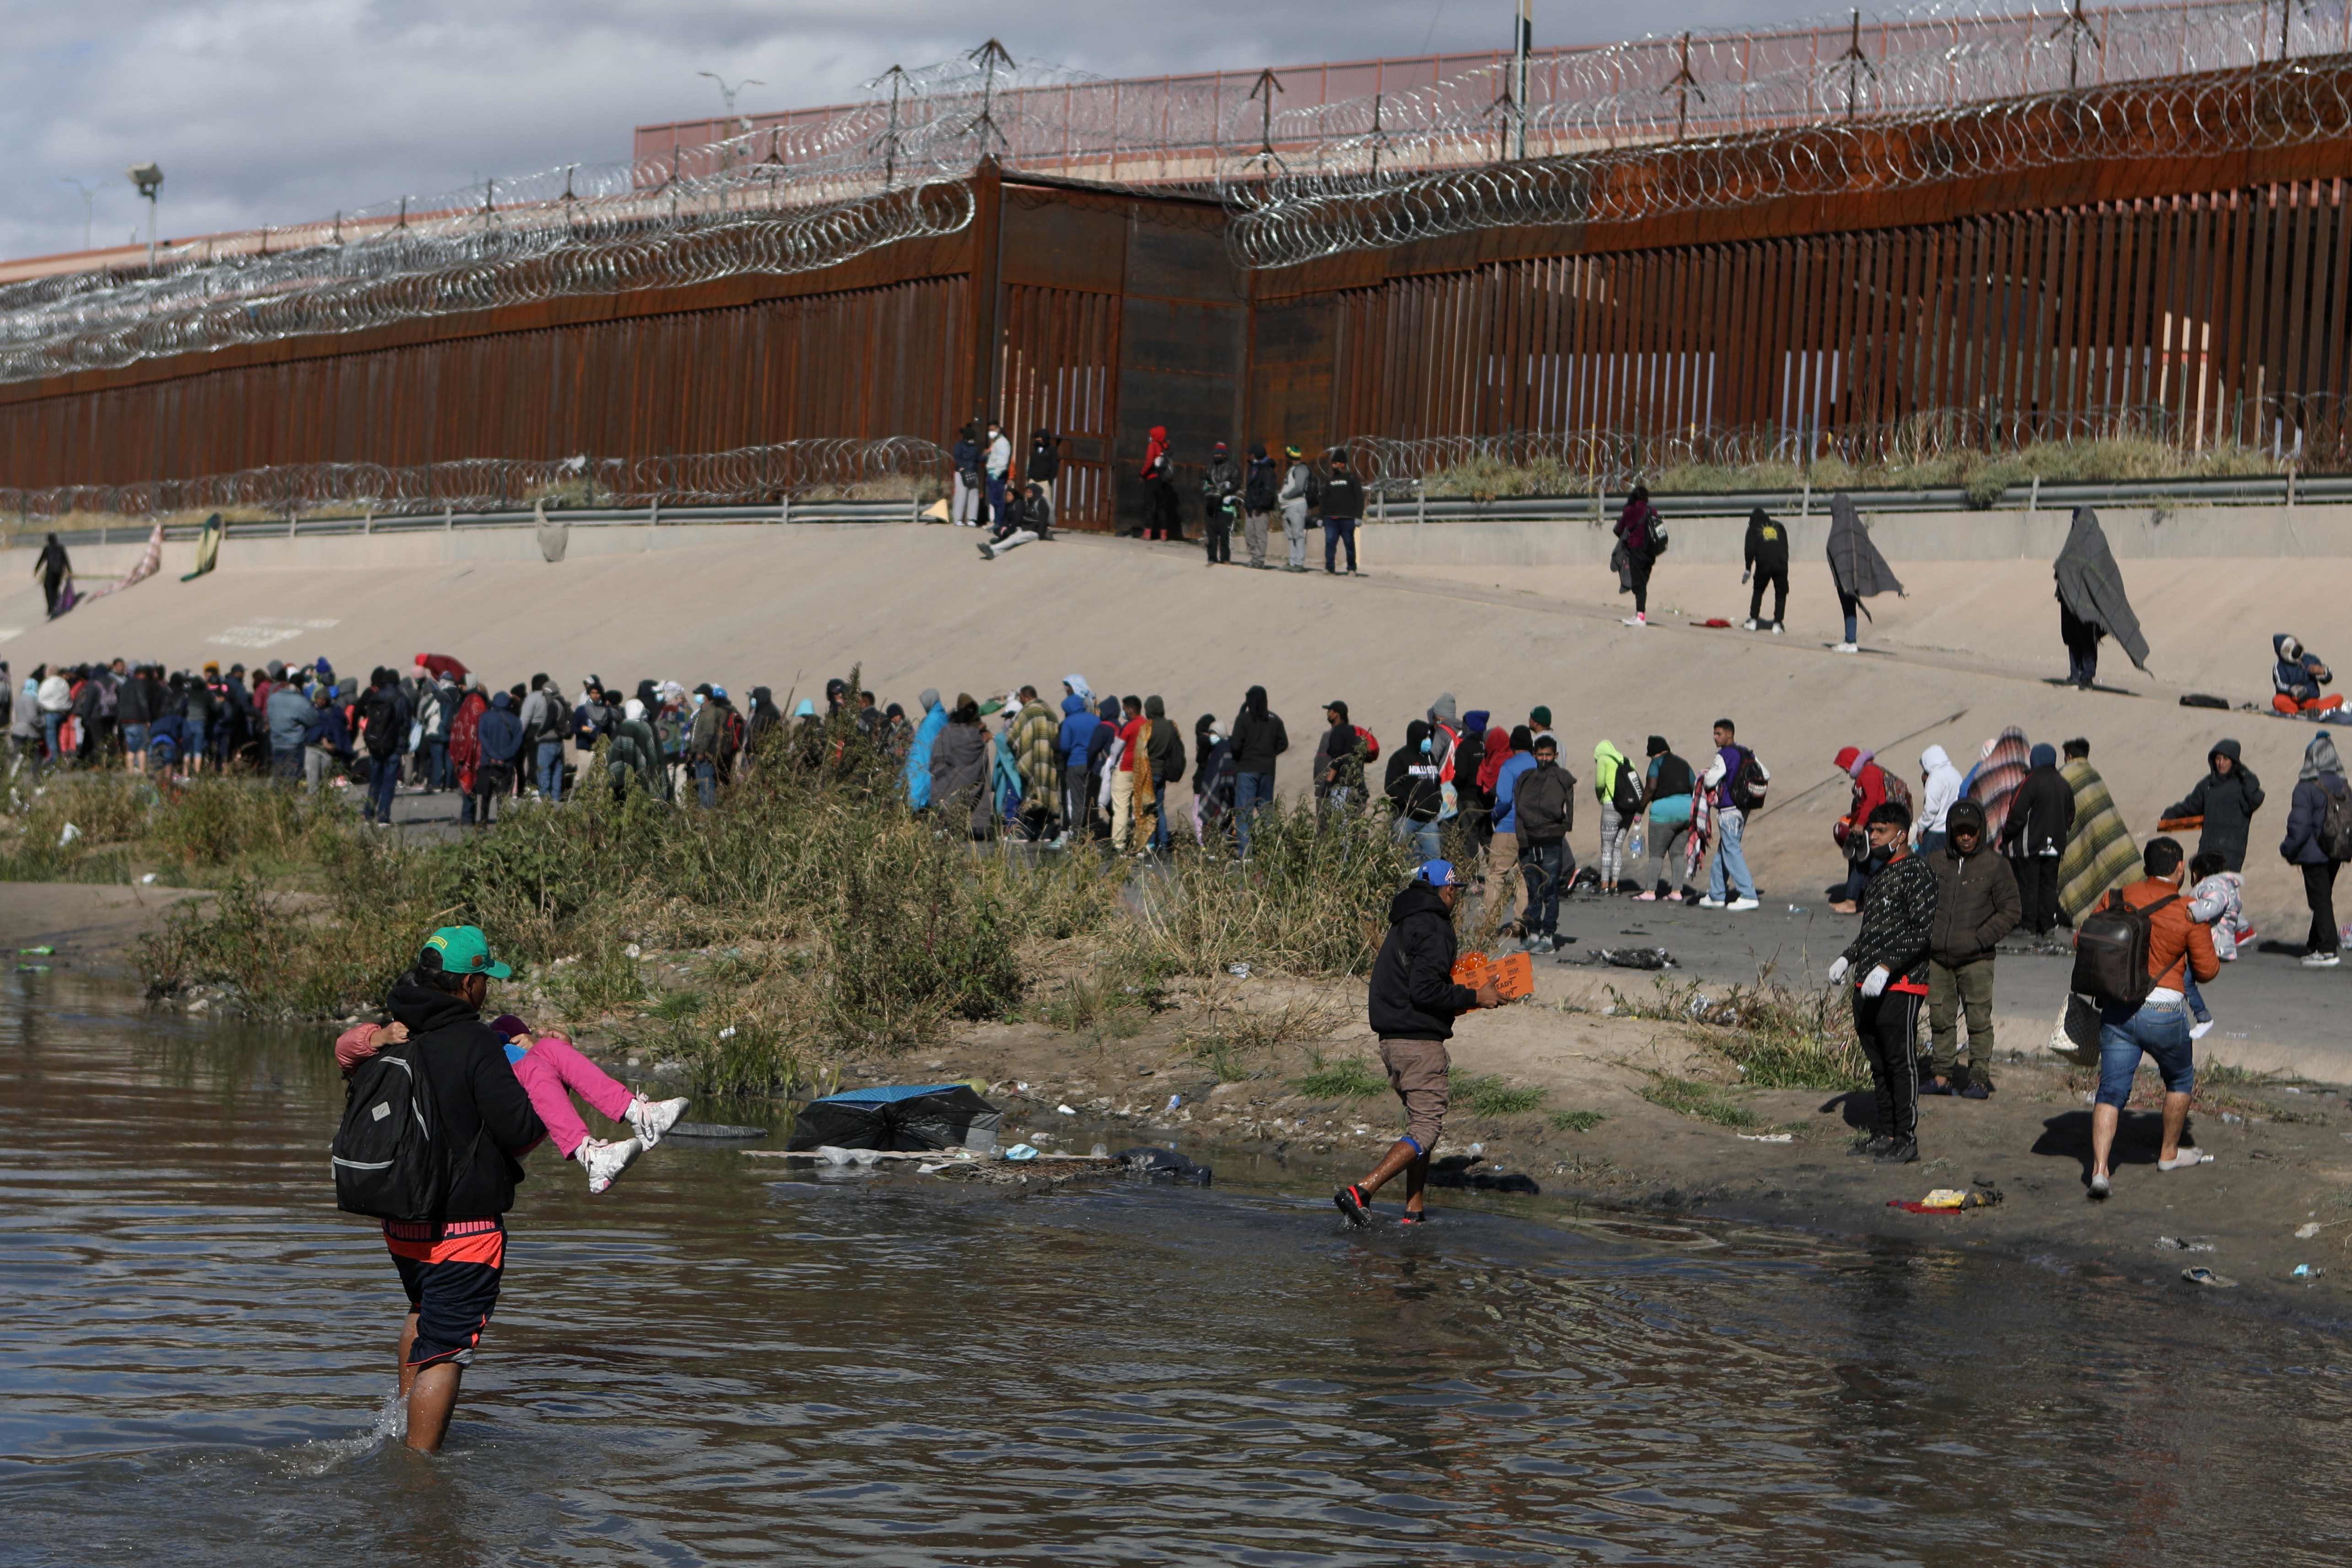 La frontera sur de EE. UU.  se encuentra cerrada a la migración irregular, sin embargo, miles continúan llegando cada día. (Foto Prensa Libre: Hemeroteca PL)